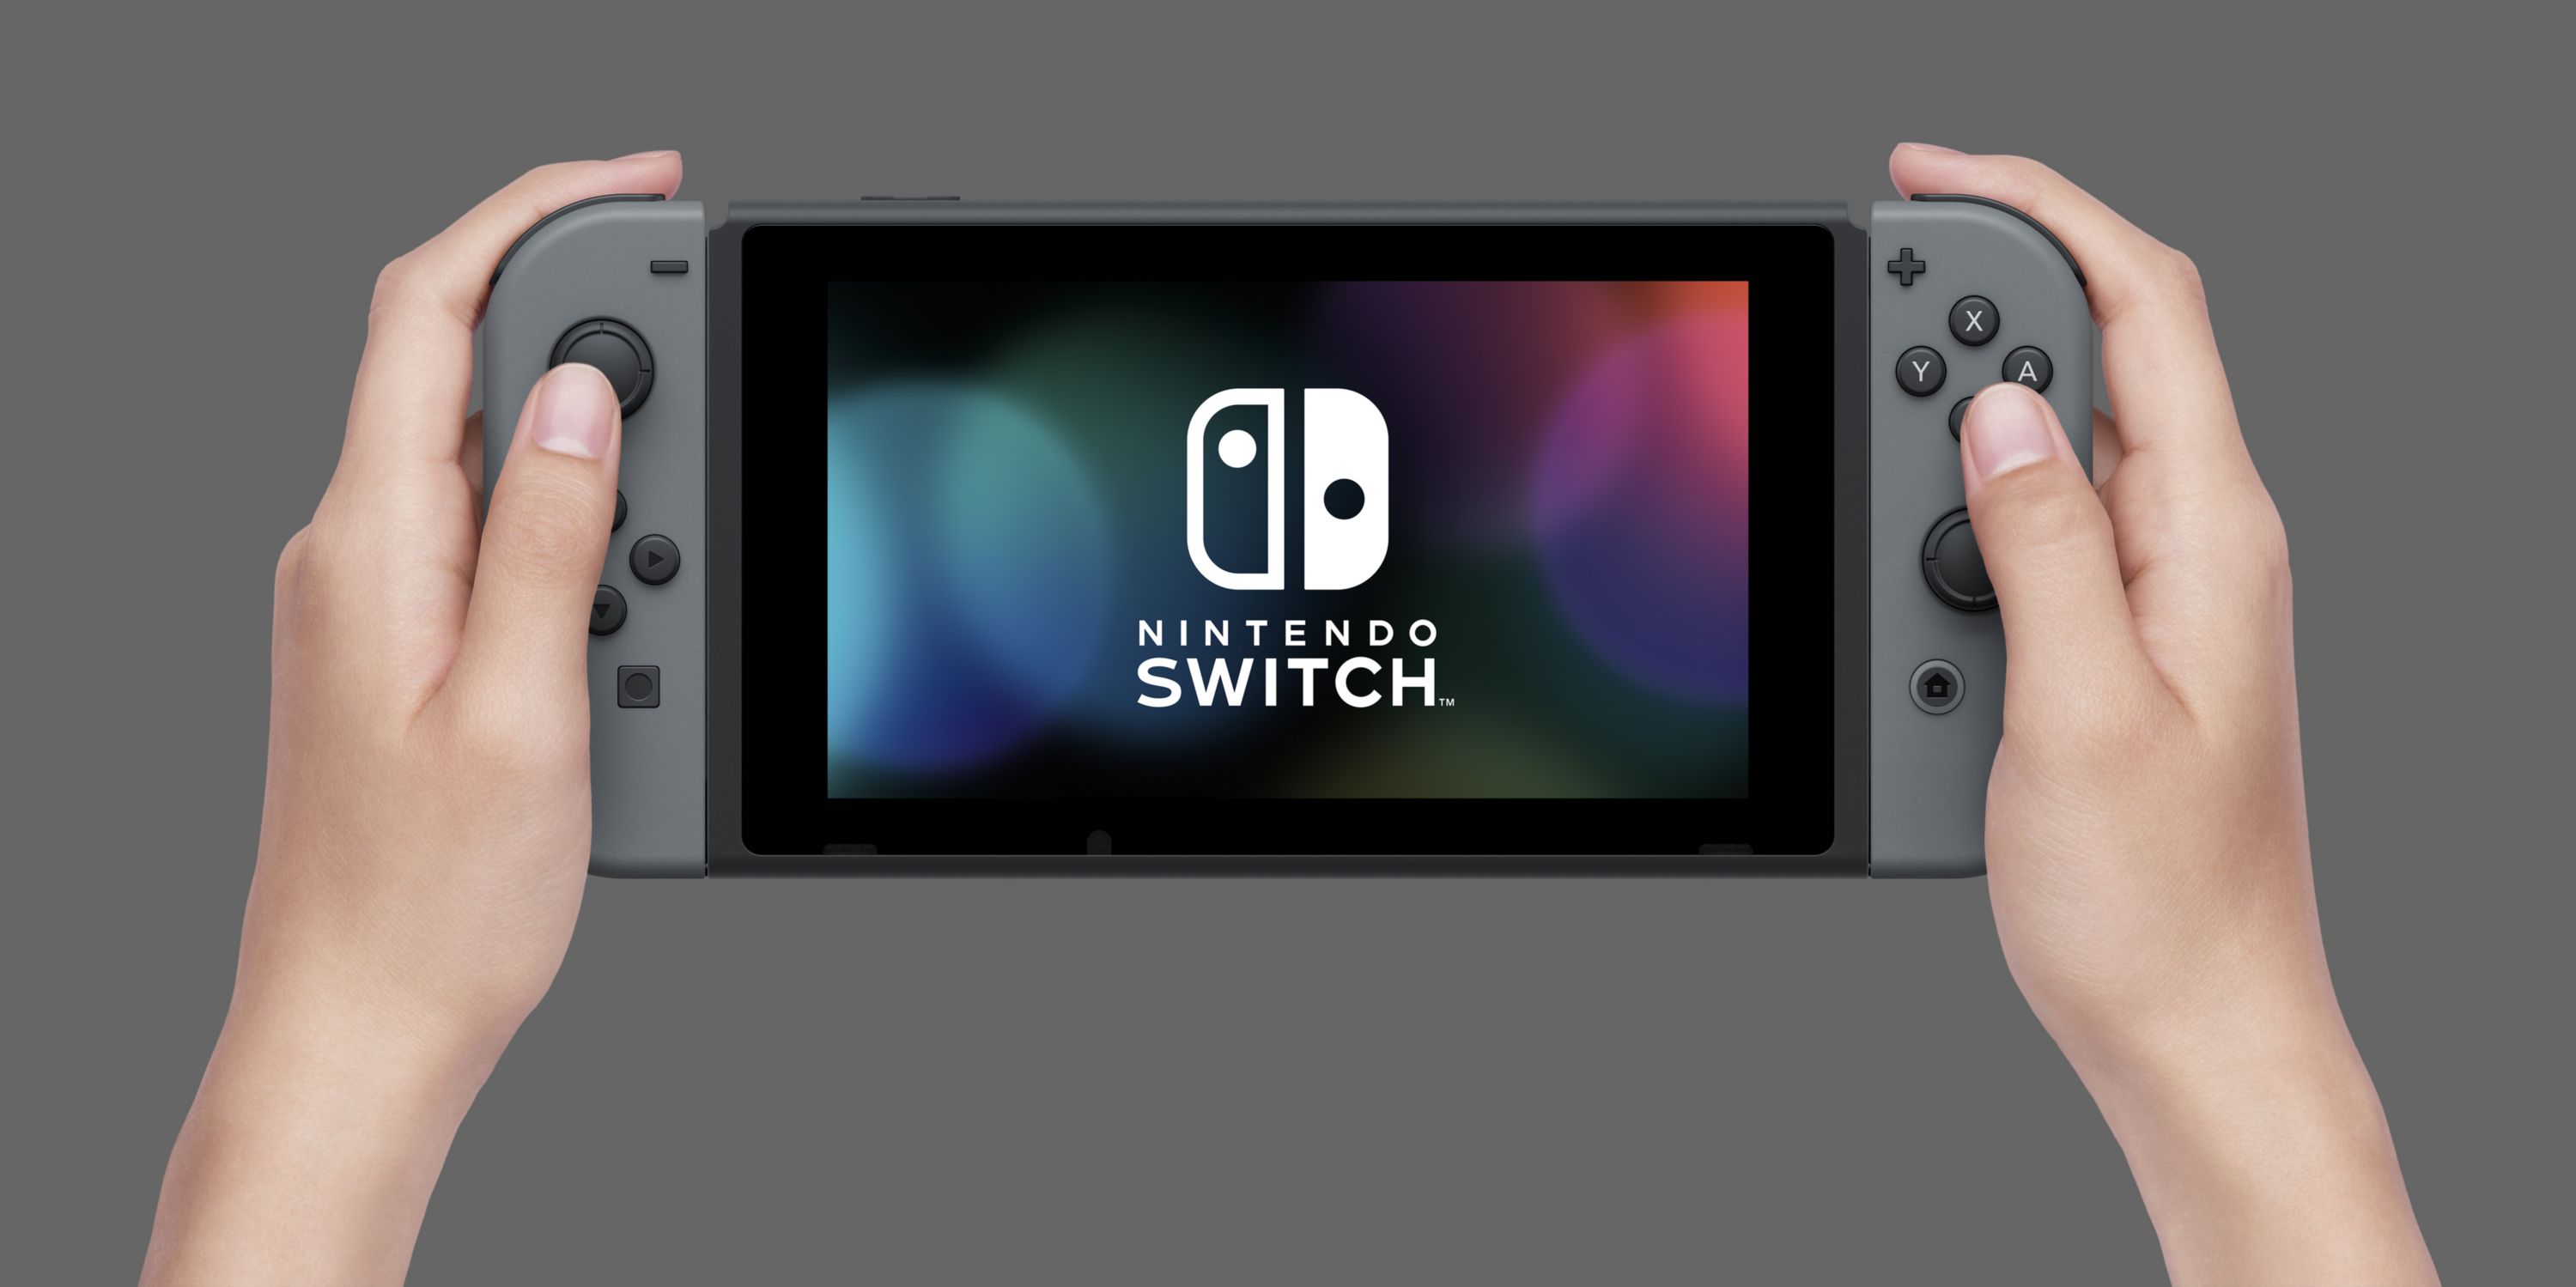 Nintendo Switch tiene 32 GB de almacenamiento y pantalla touchscreen 720p -GAMERSrd